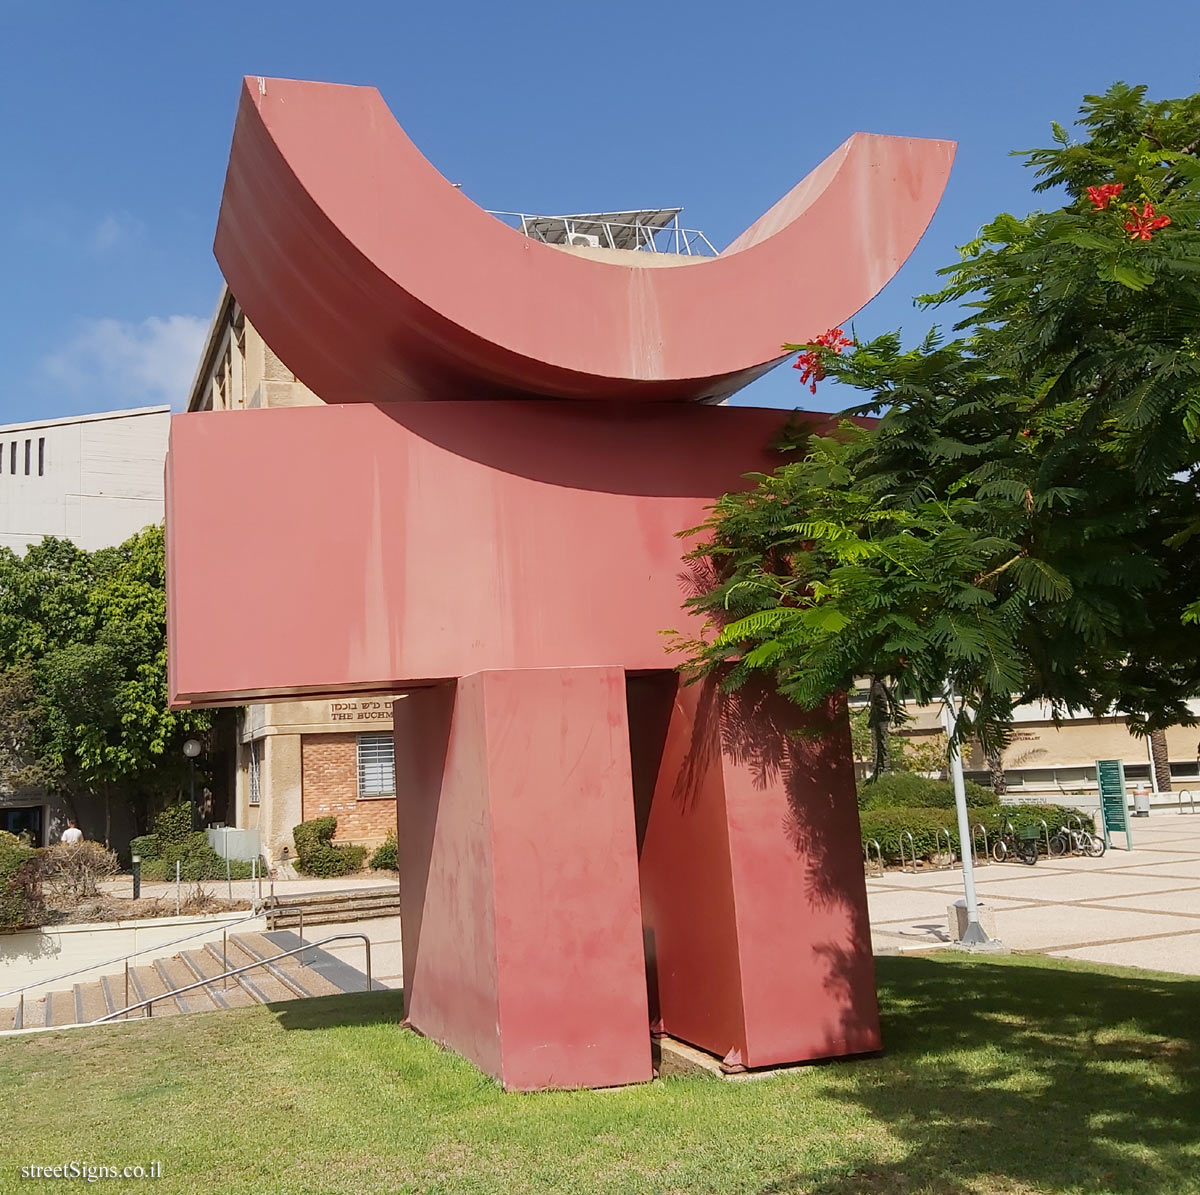 "2M Series No. 4" - outdoor sculpture by Bernard Schottlander - Tel Aviv University-Ramat Aviv Campus, Tel Aviv, Israel